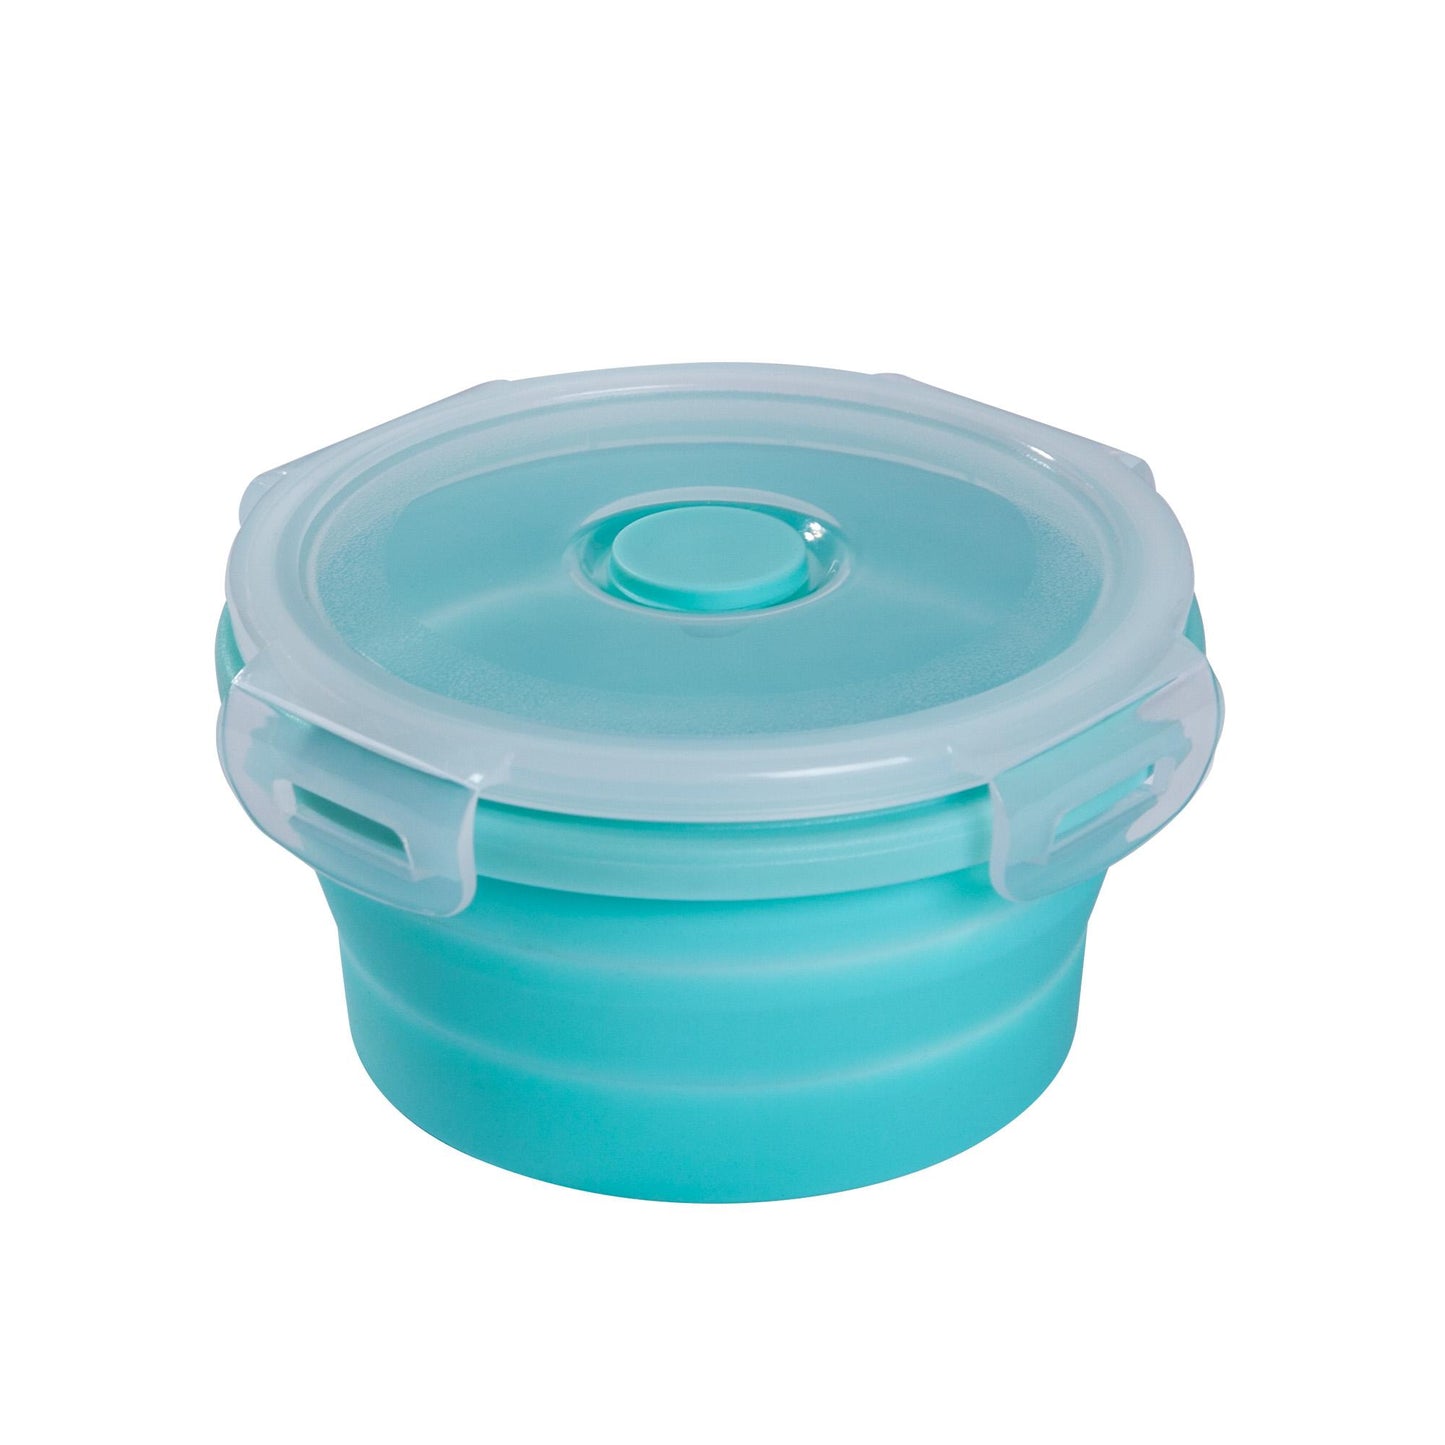 mixcover faltbare Frischhaltedose mit Deckel aus Silikon Bentobox Brotdose Lunchbox Picknick Camping Schüssel BPA-frei platzsparend 250 ml grün